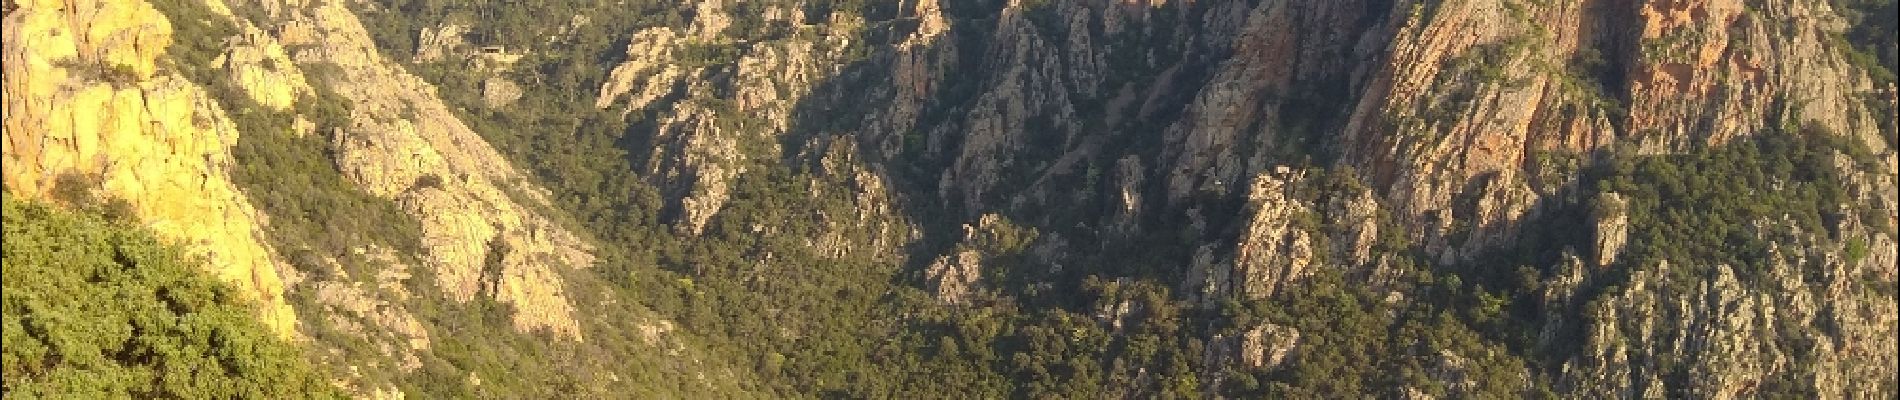 Randonnée Marche Ota - Corse 2018 sentier des gorges - Photo